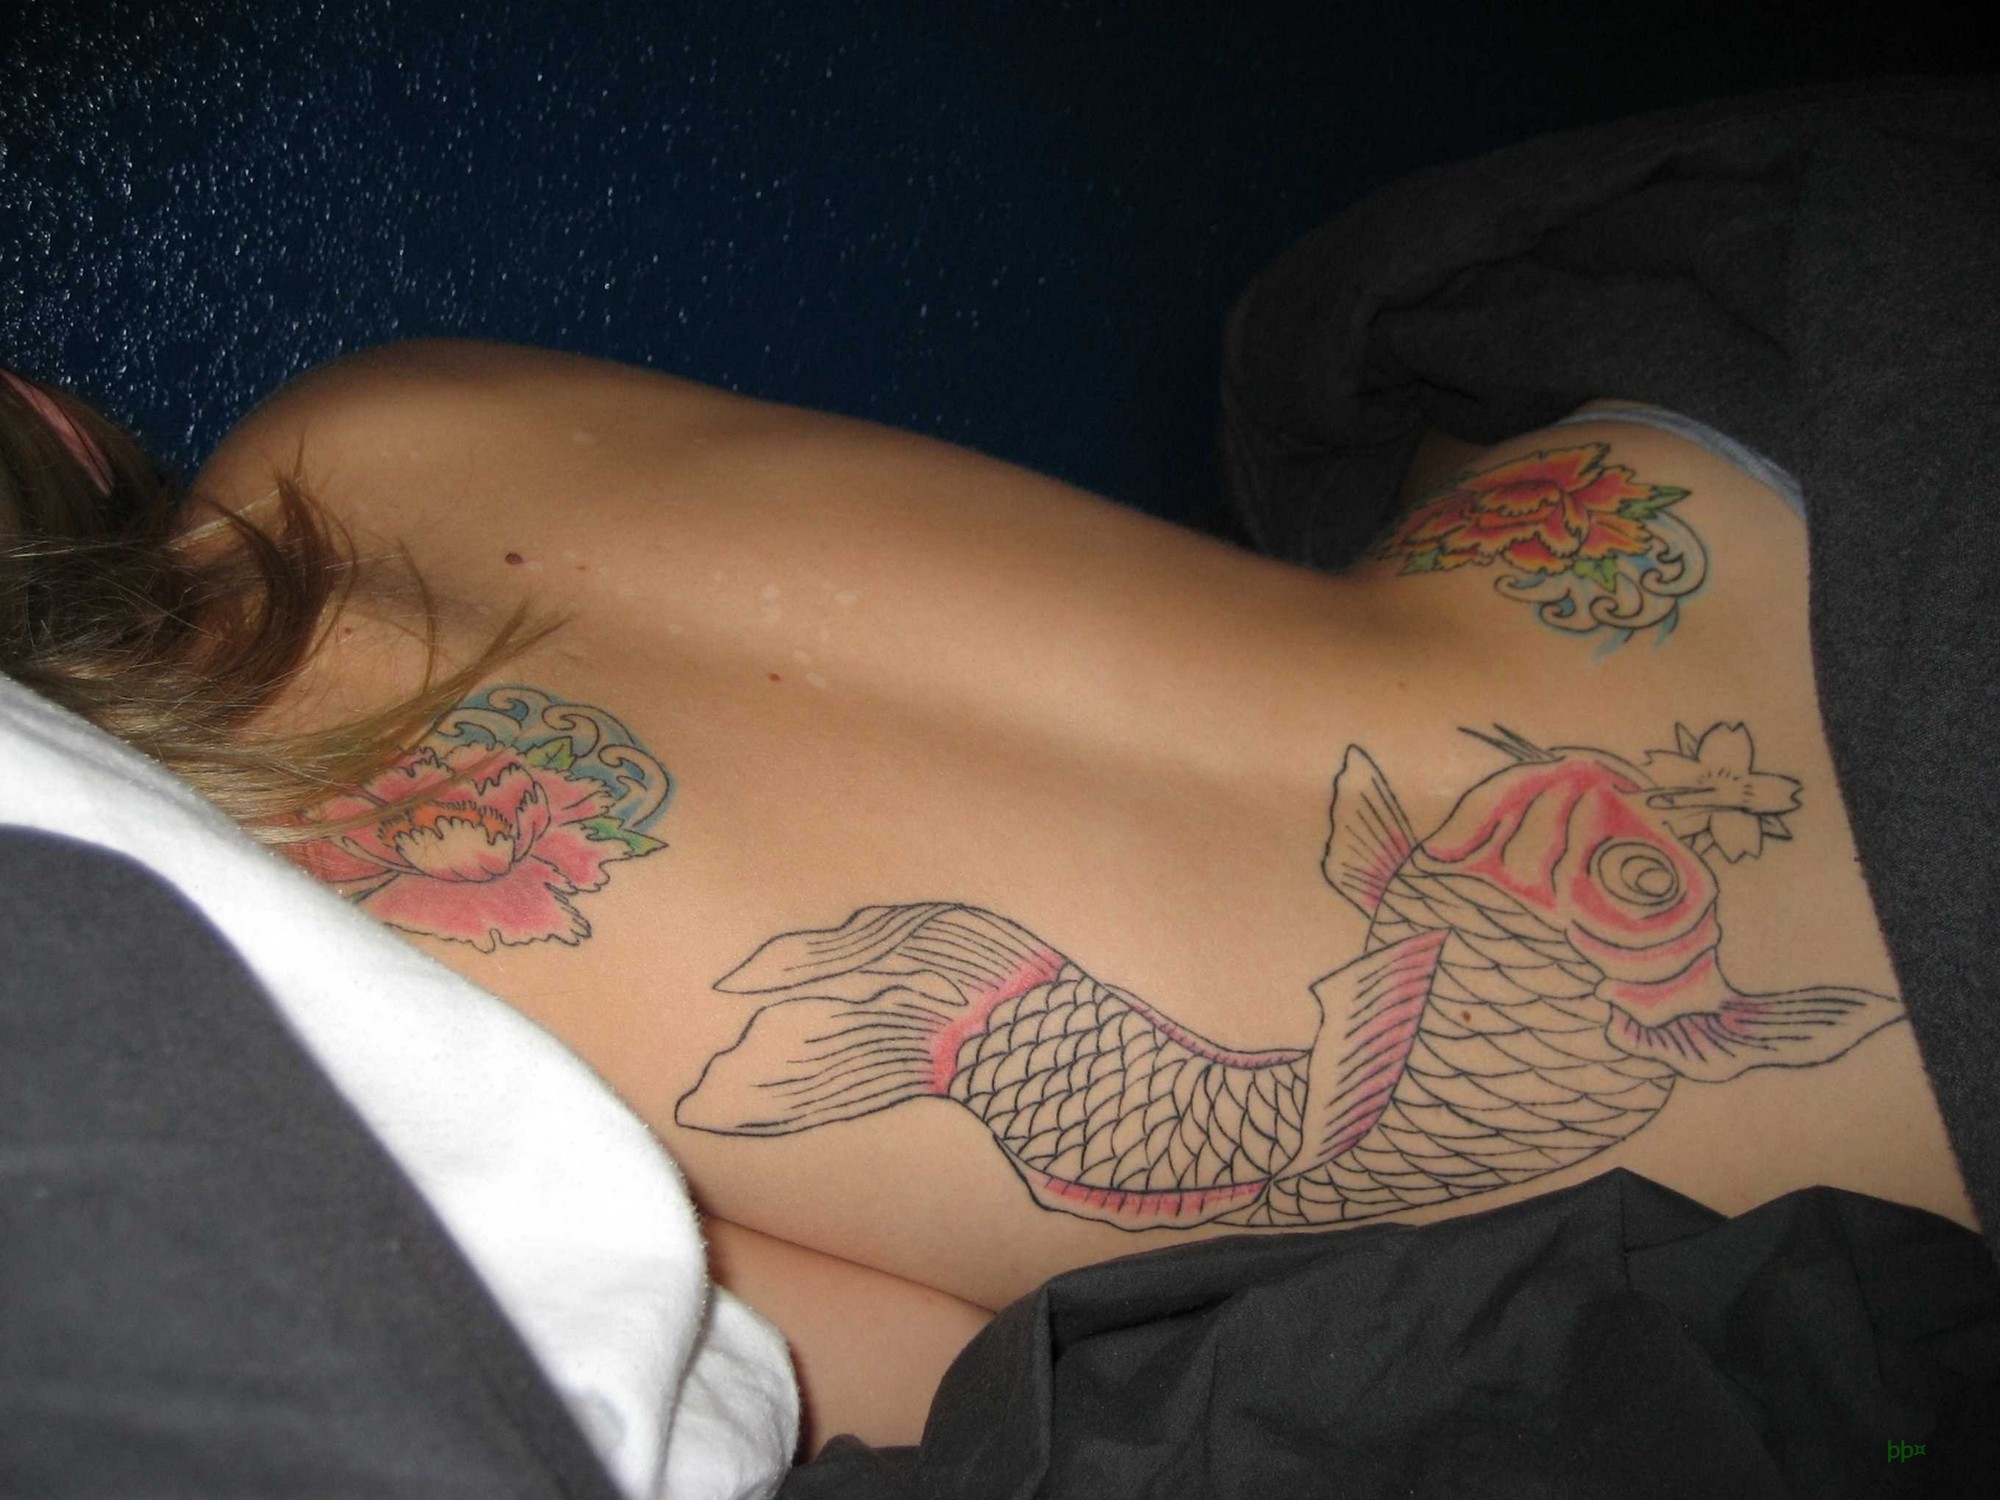 Особа с татуировкой на боку красуется обнаженным телом в своей квартире 21 фотография